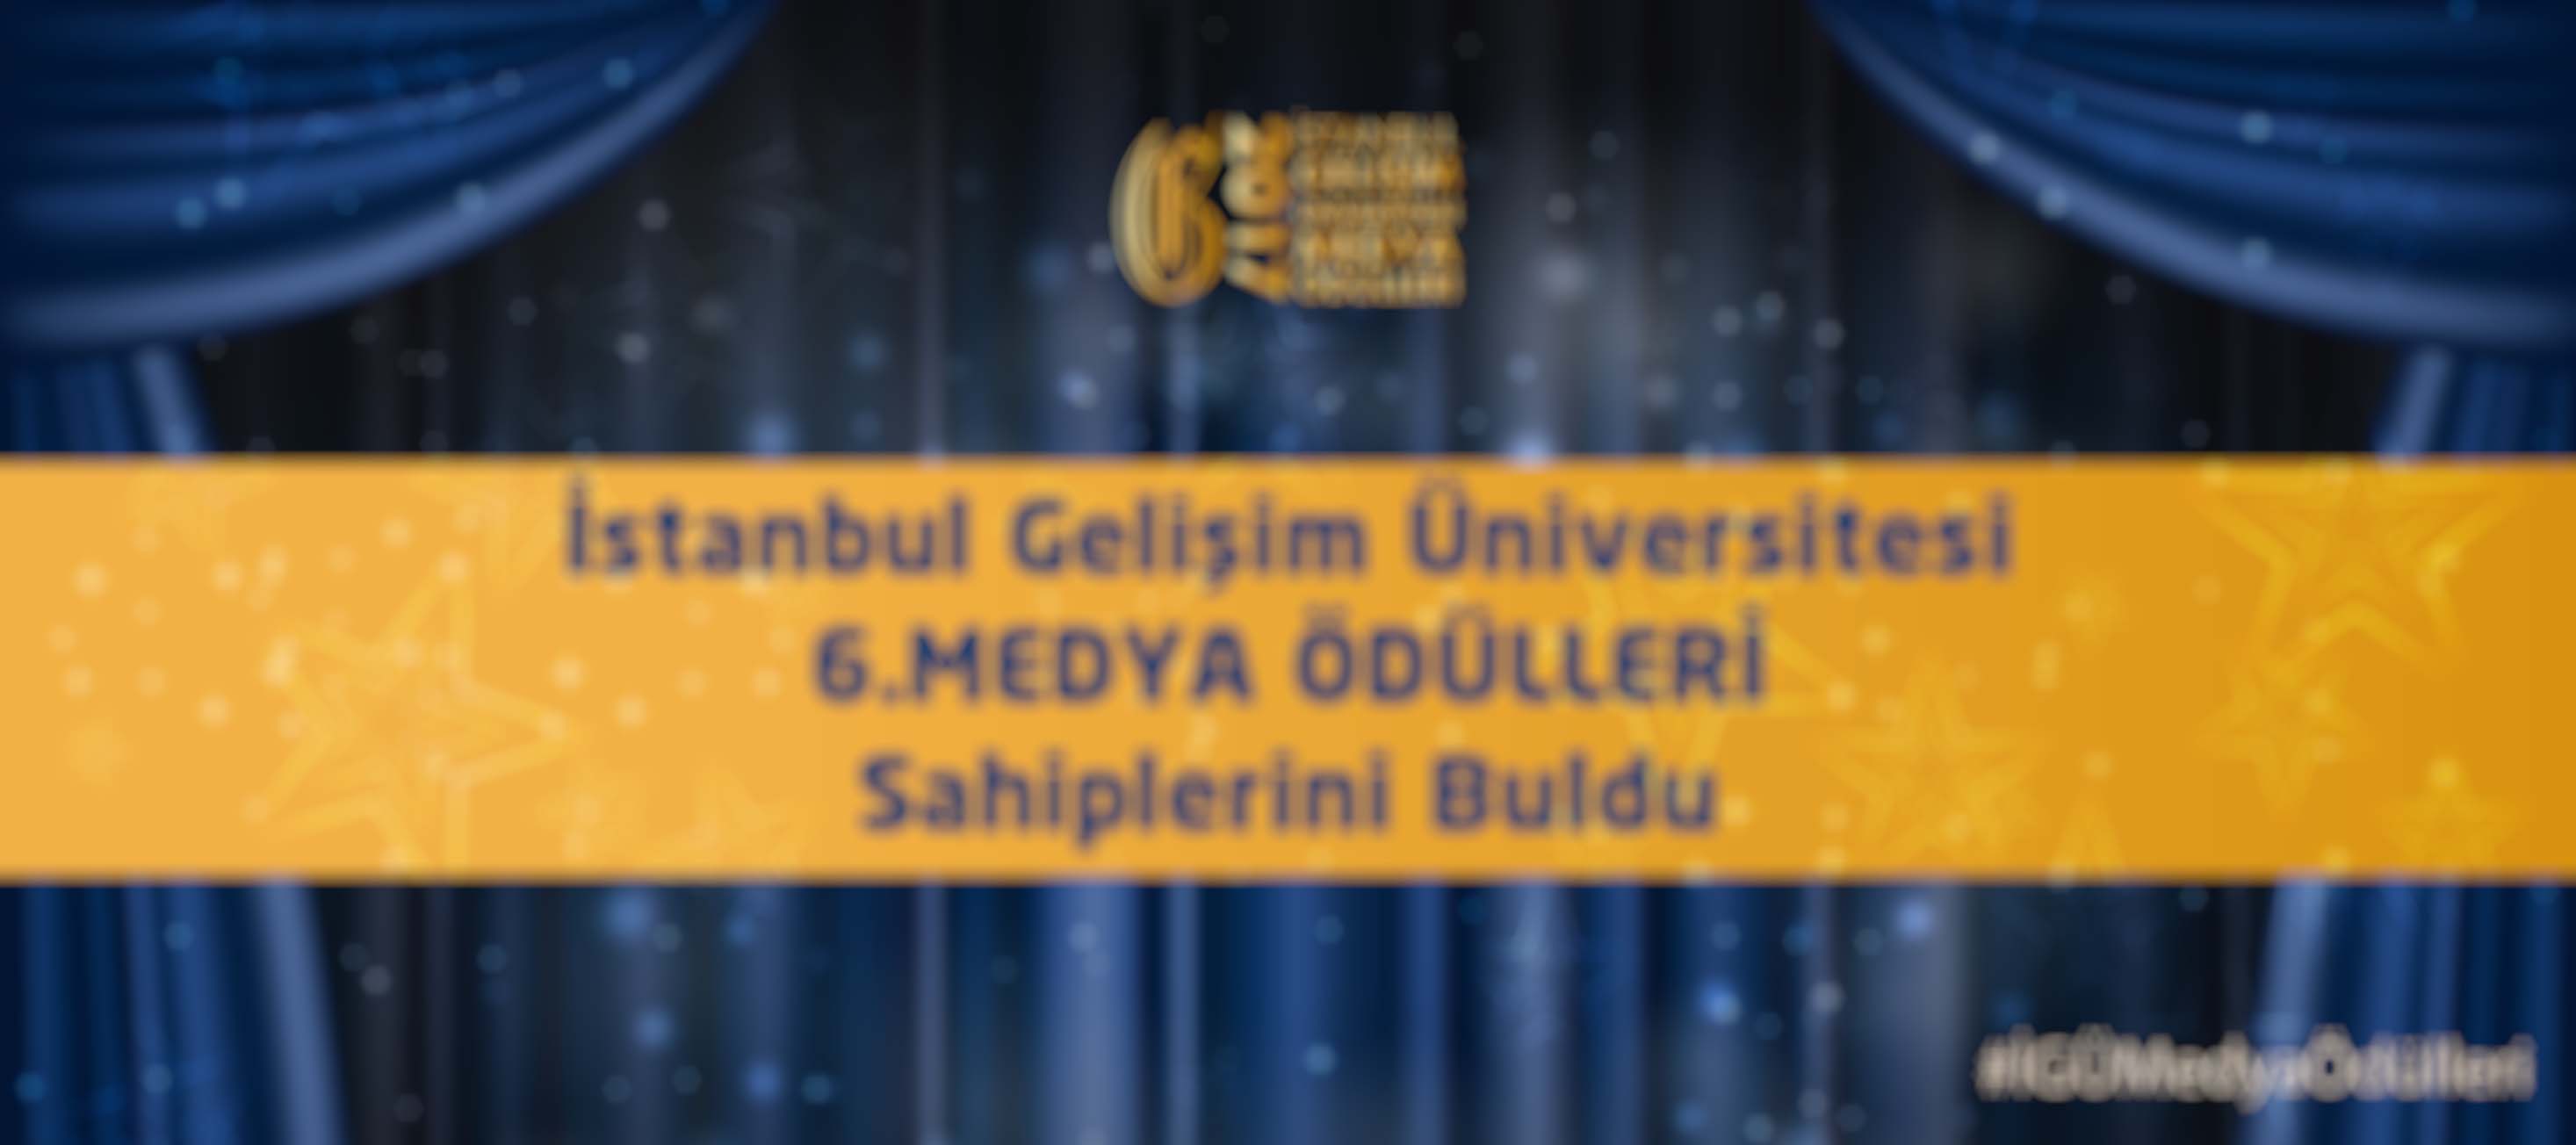 İstanbul Gelişim Üniversitesi 6. Medya Ödülleri Sahiplerini Buldu!